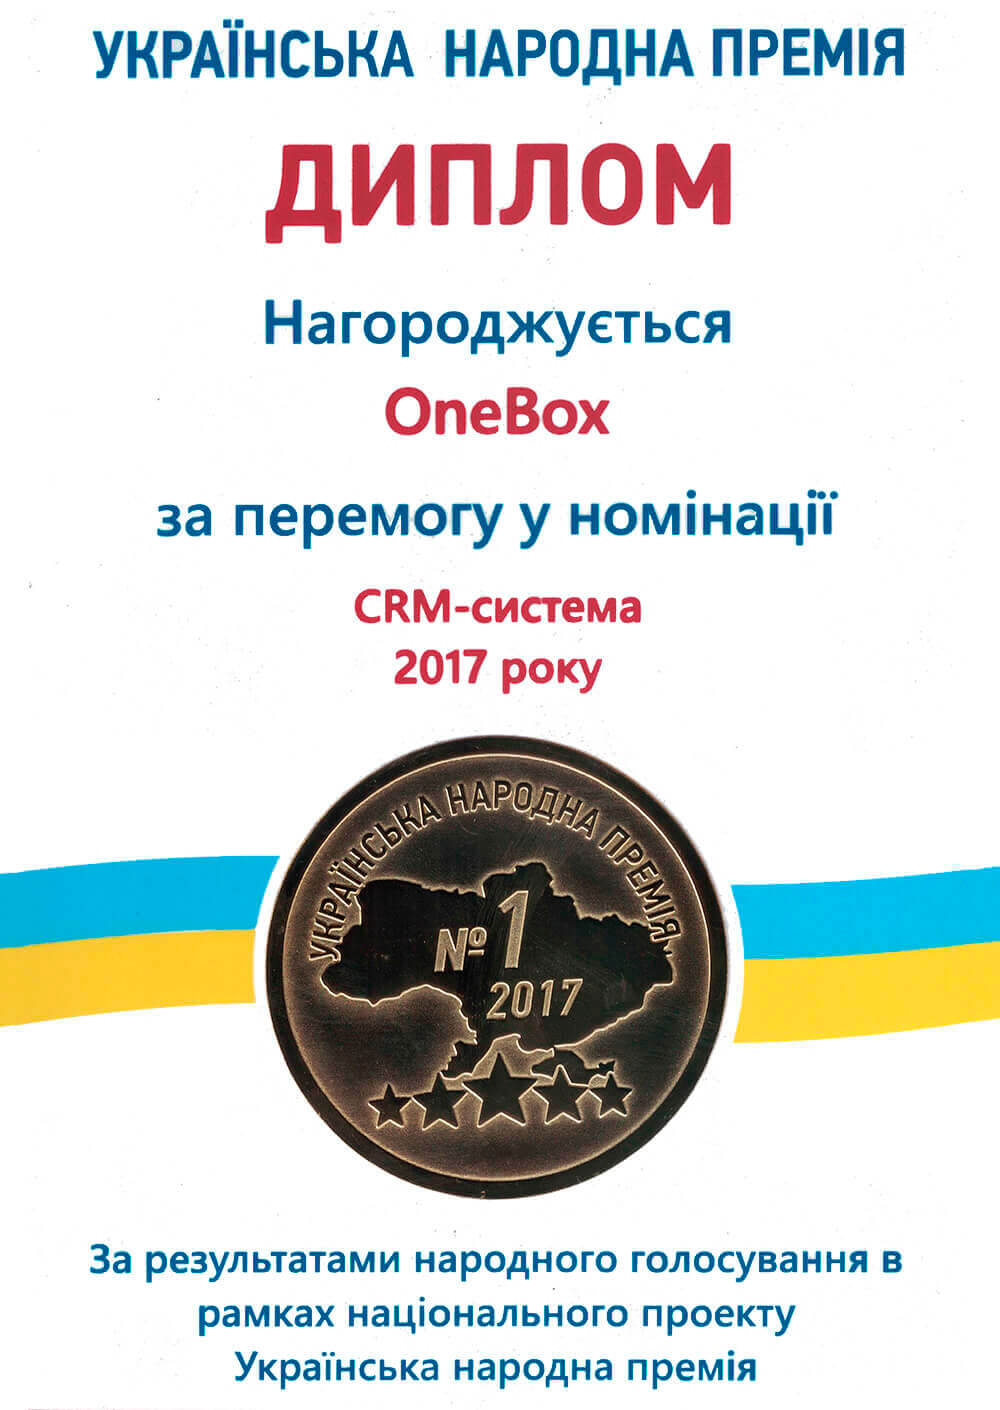 Компанія OneBox знову отримала почесну «Українську народну премію»